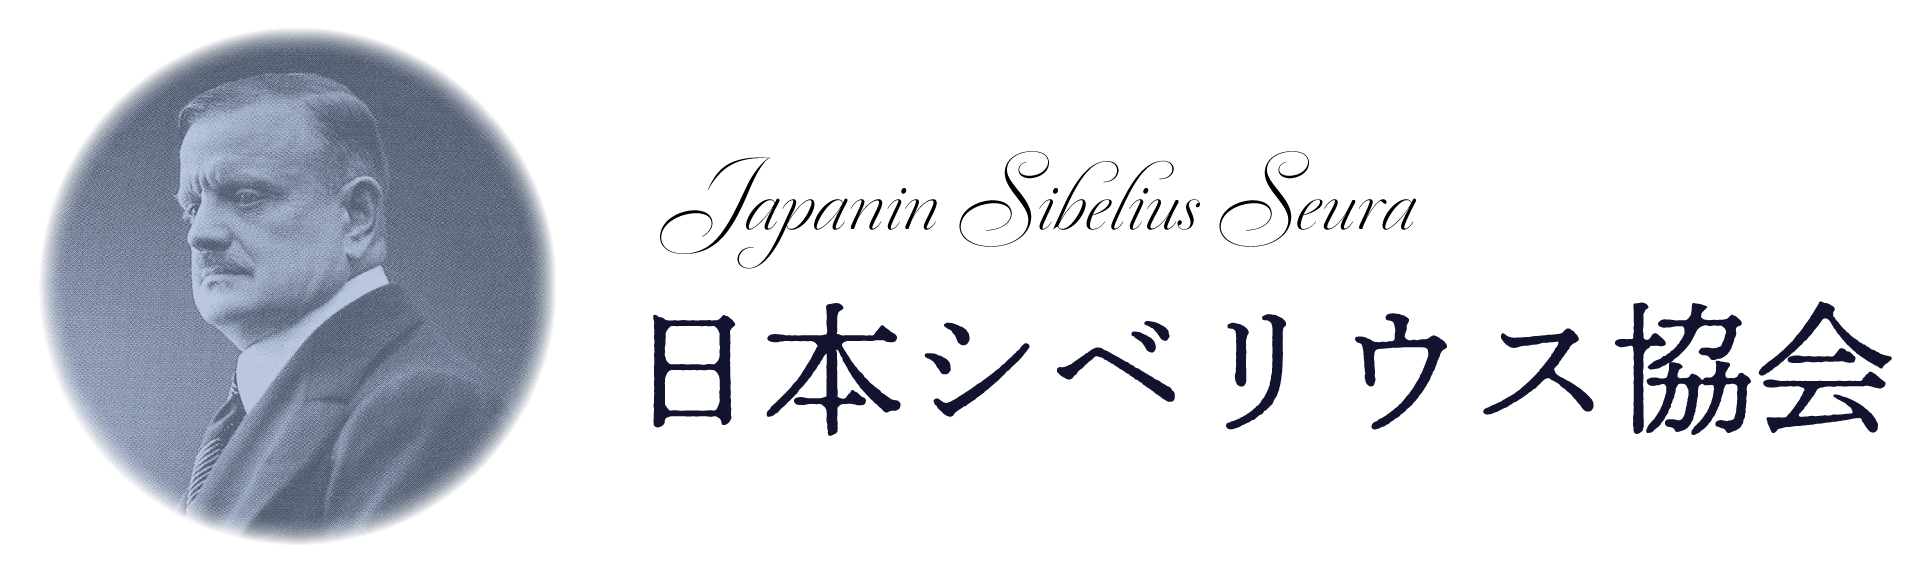 日本シベリウス協会